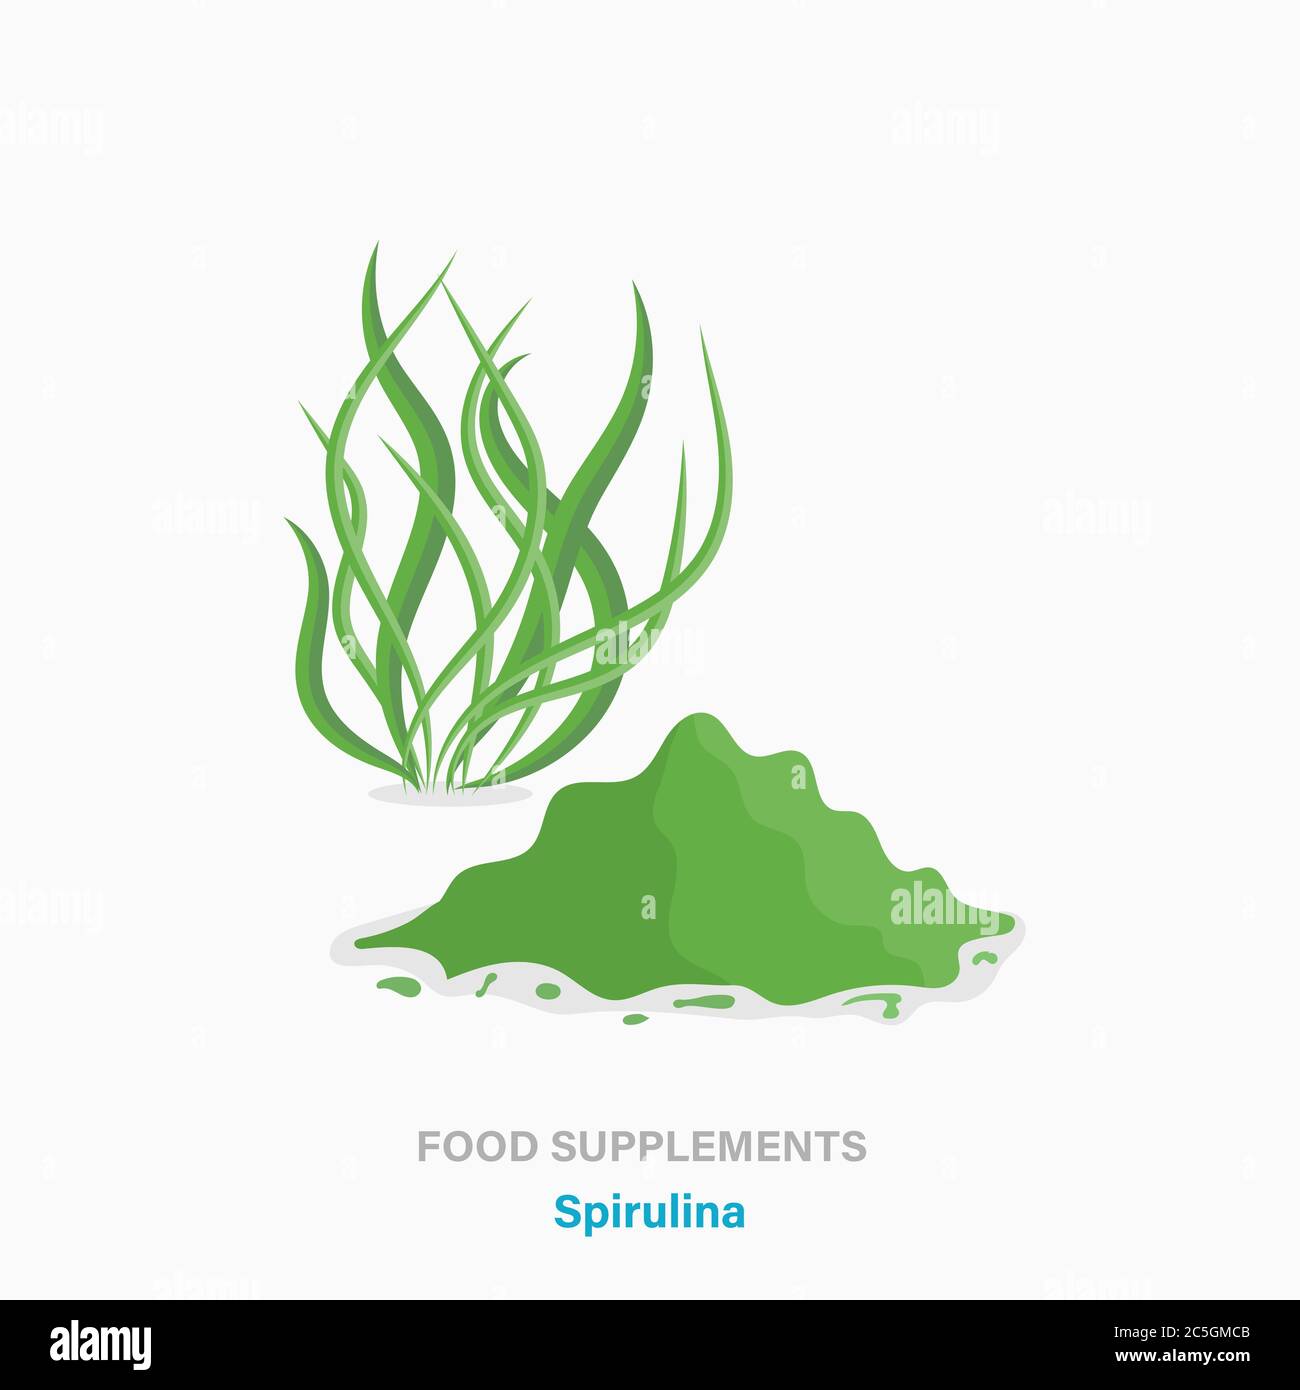 Vecteur plat isolé icône des suppléments alimentaires - plante d'algues spiruline Illustration de Vecteur